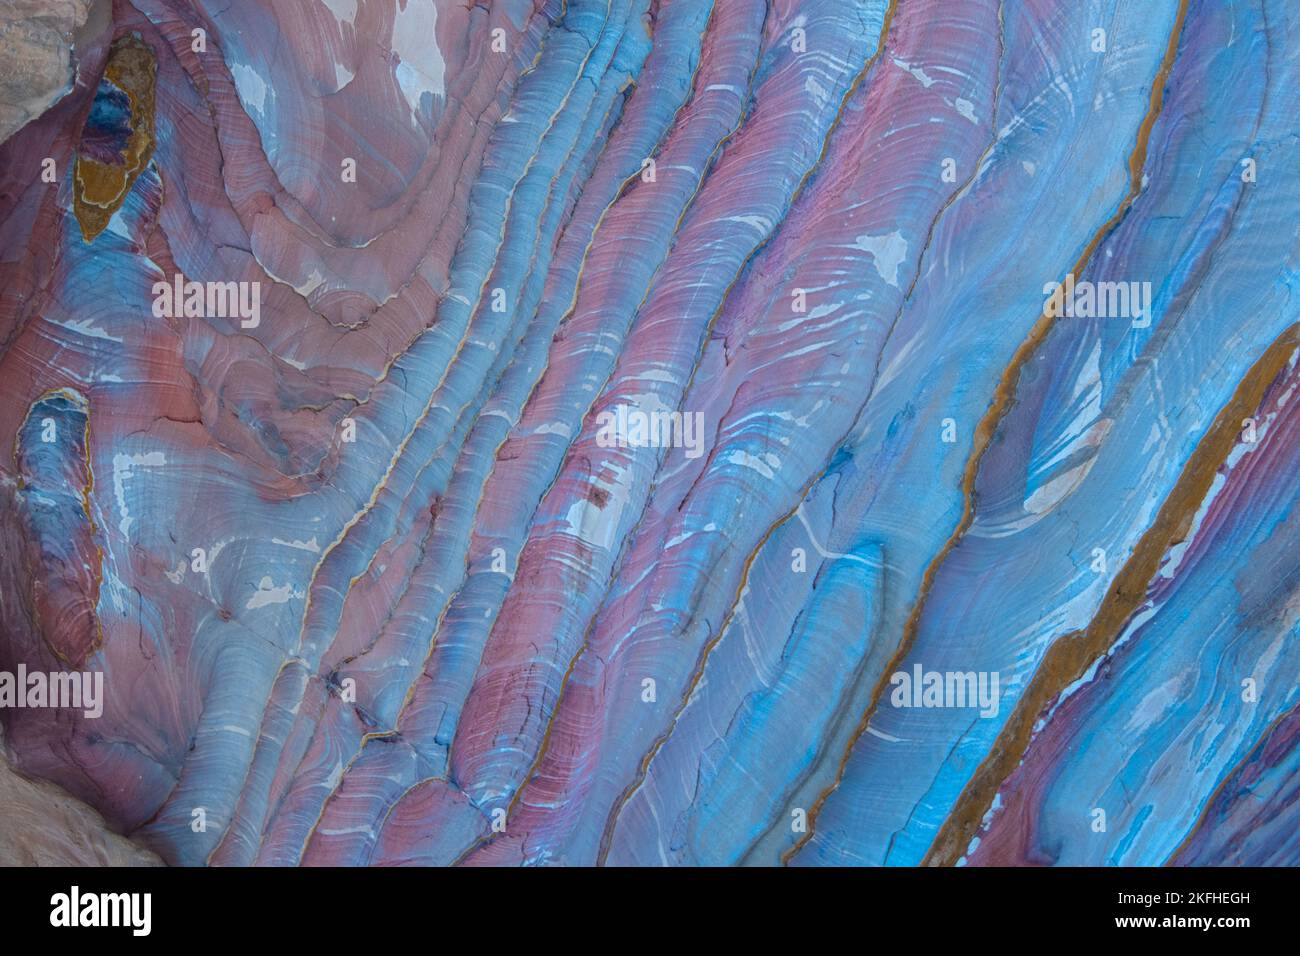 Geologische Formationen in verschiedenen Formen und Farben wie Blau, Pink, Bown Stockfoto